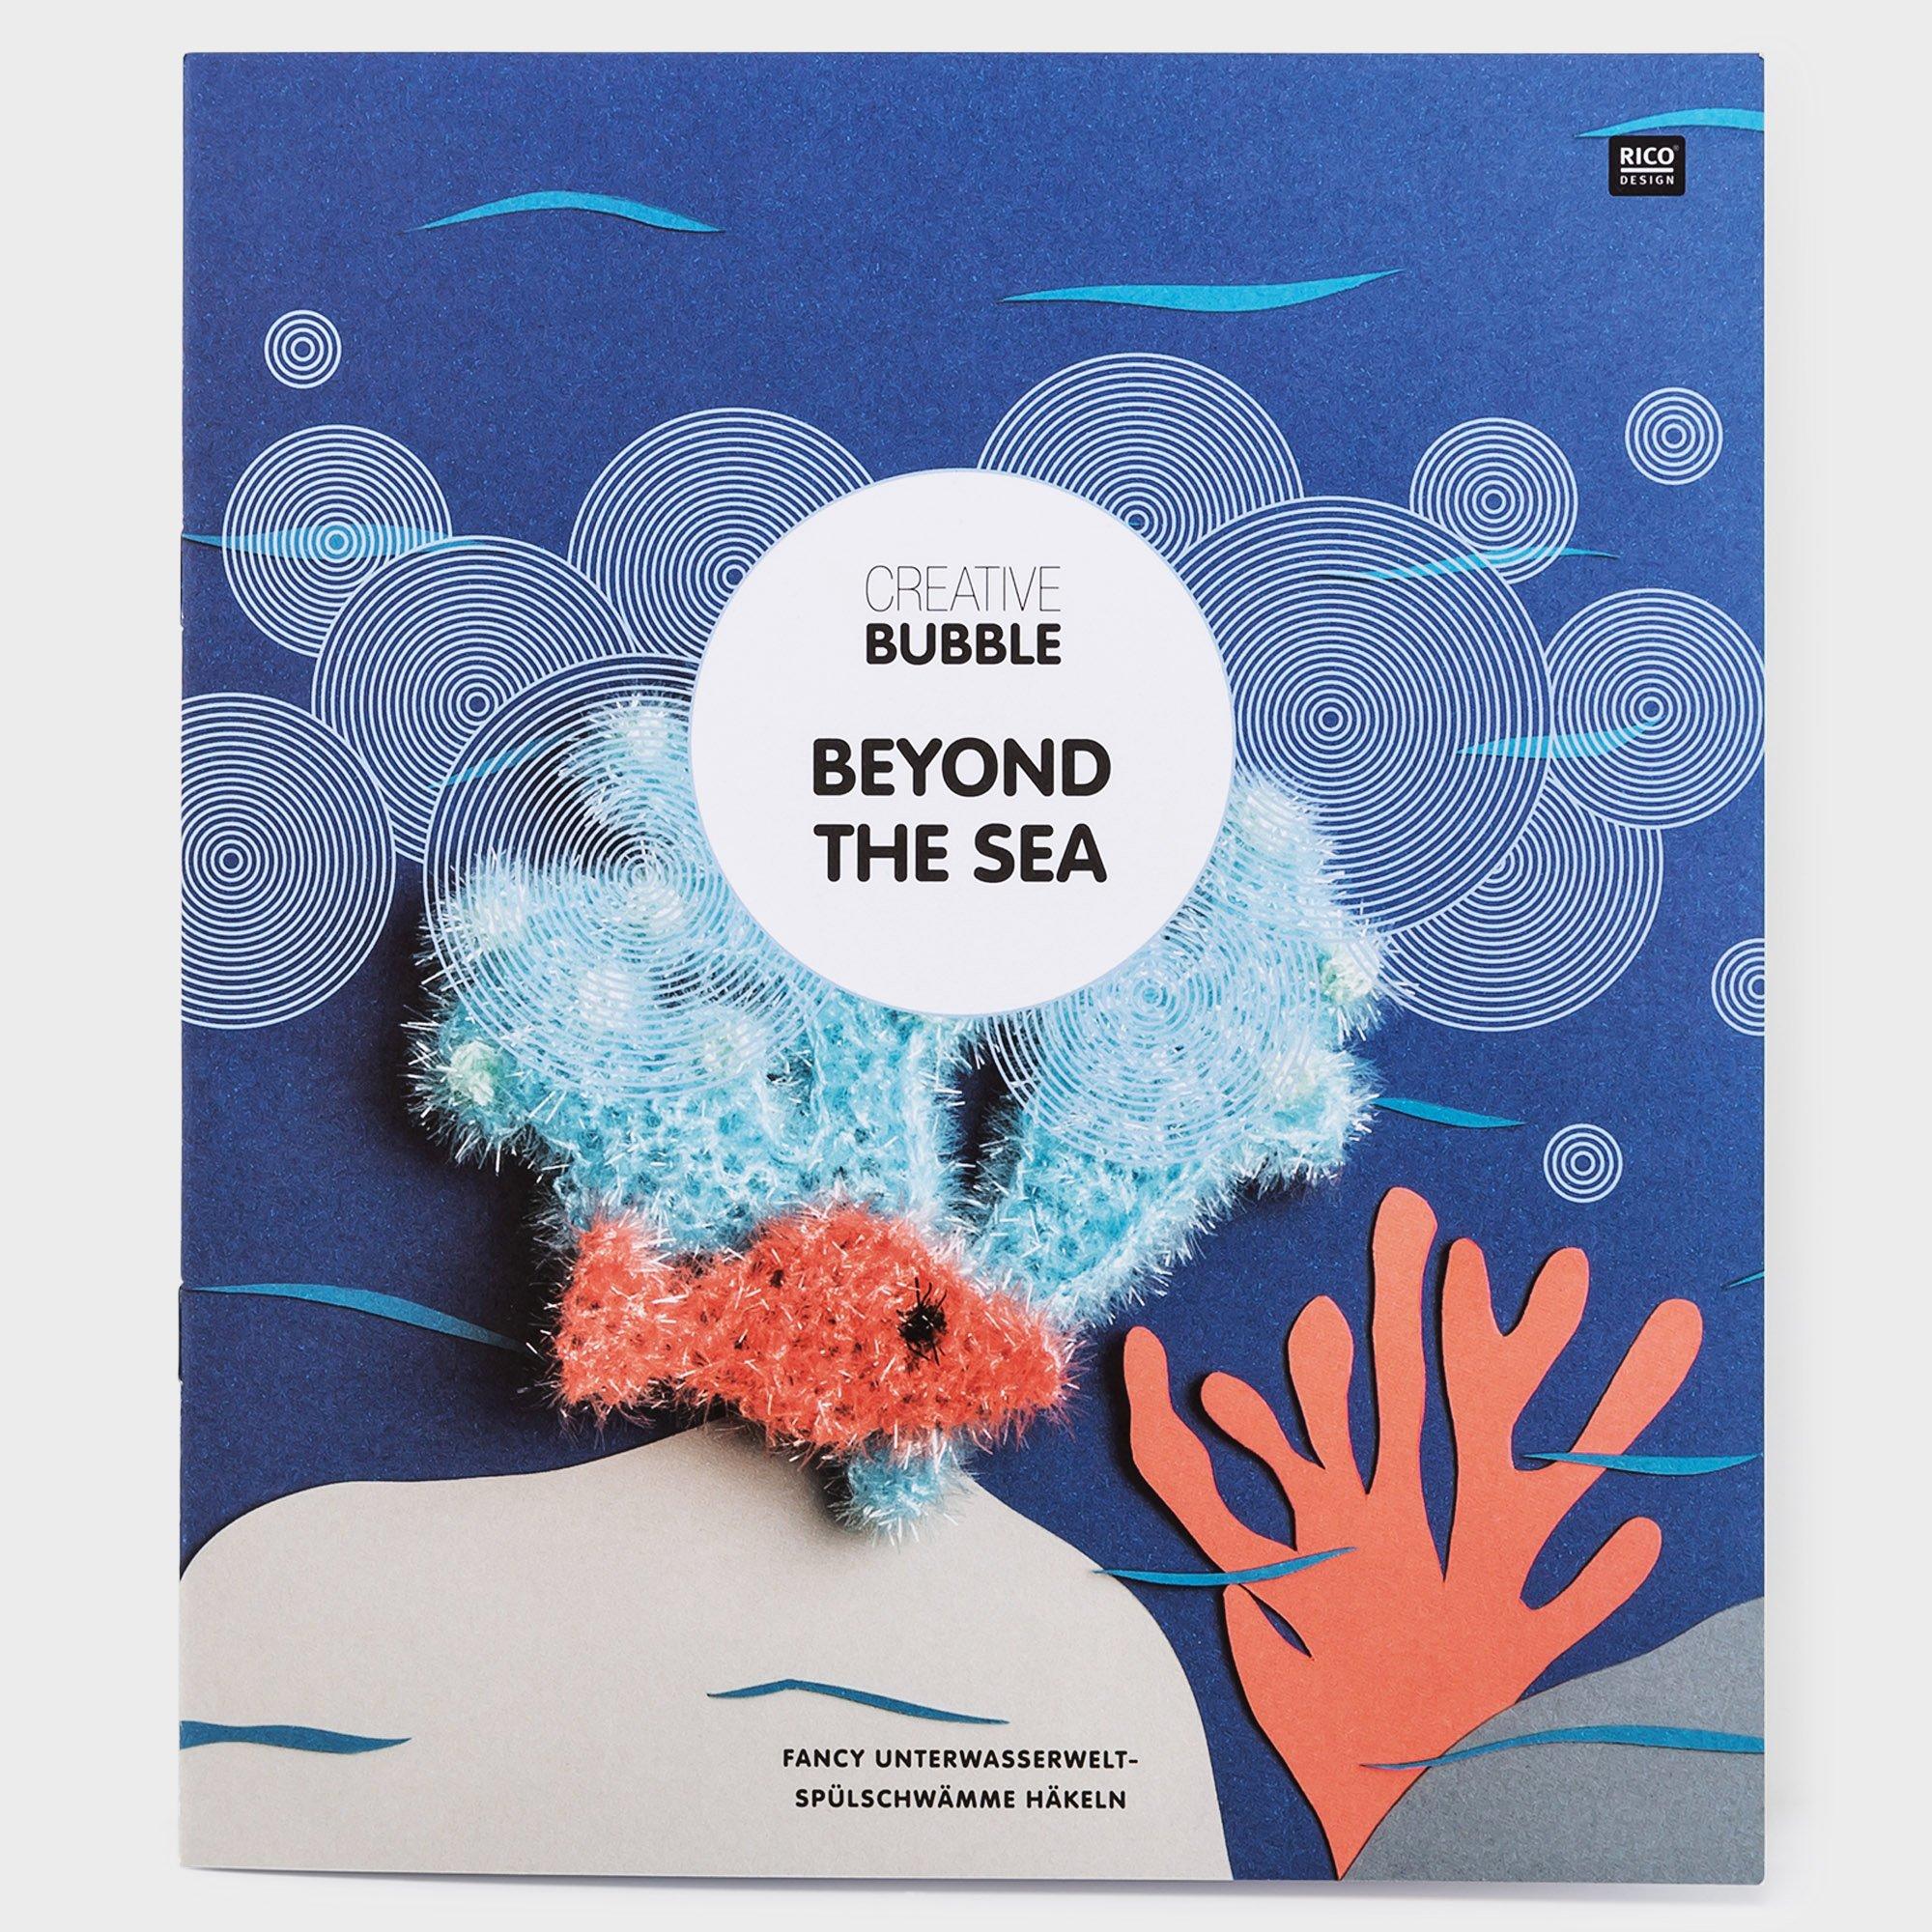 Manor Libro Creative Bubble Beyond the Sea, Tedesco 